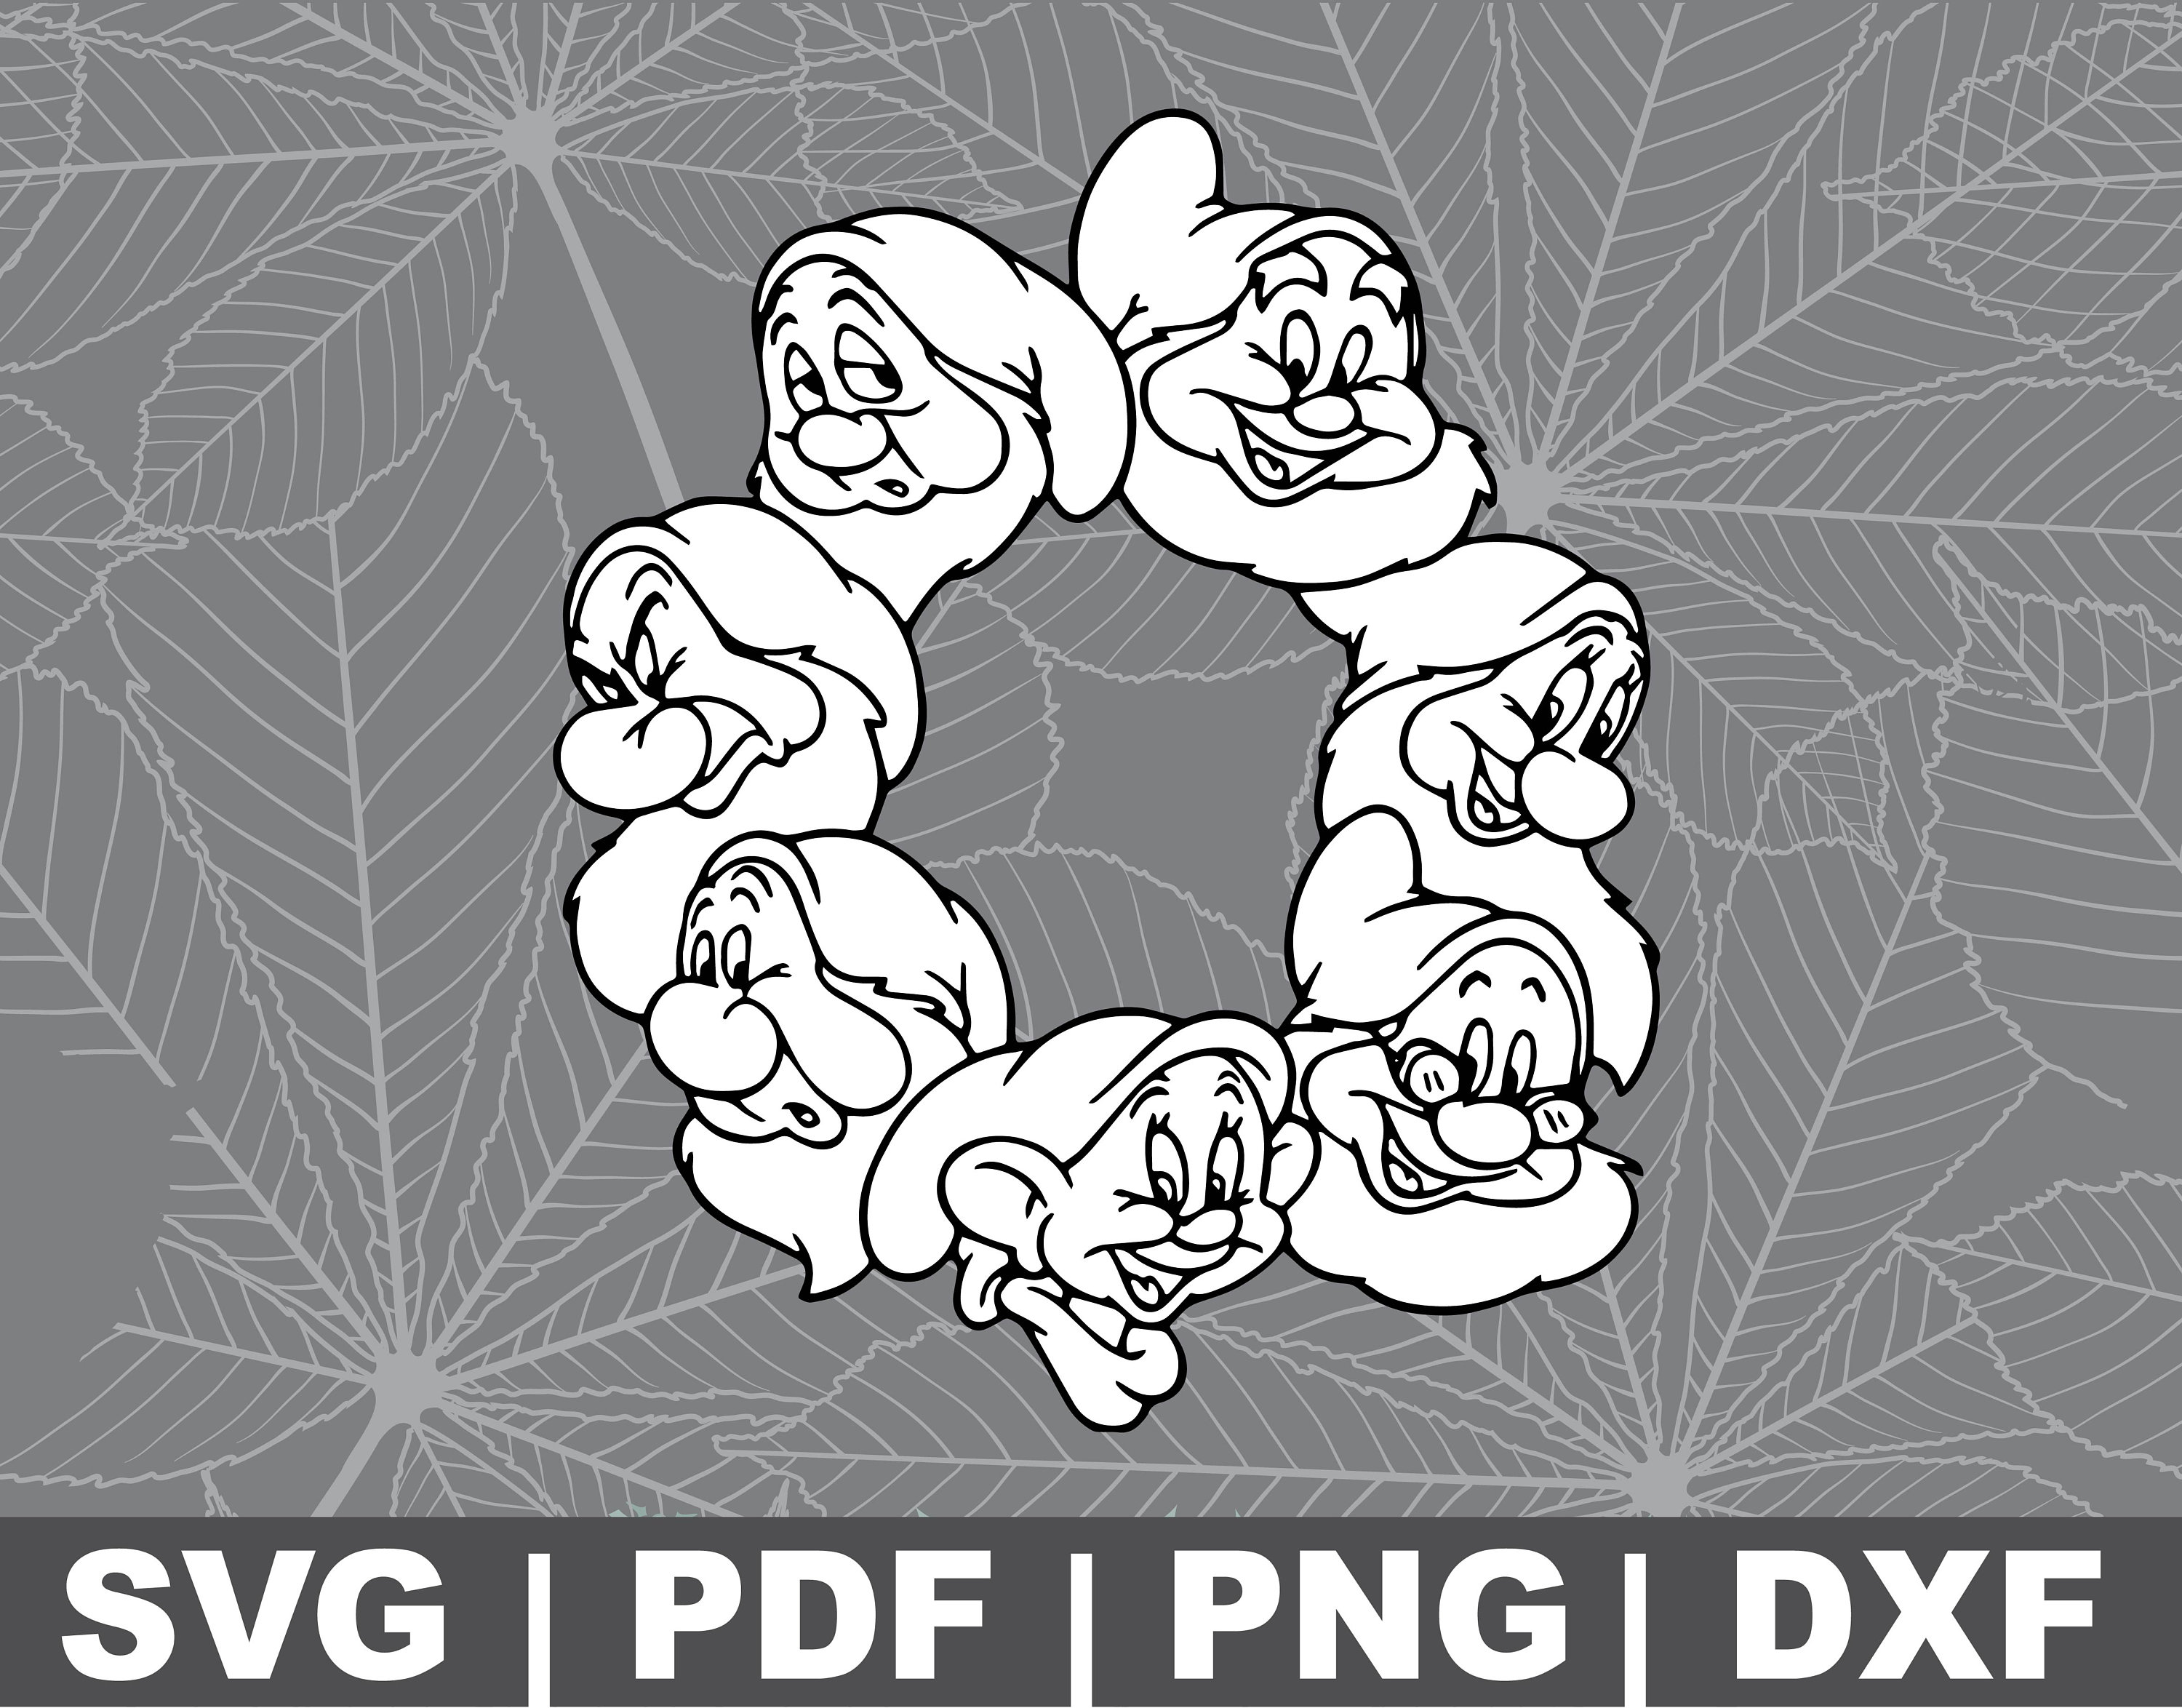 The Seven Dwarfs svg dxf Cricut Silhouette Cut File | Etsy